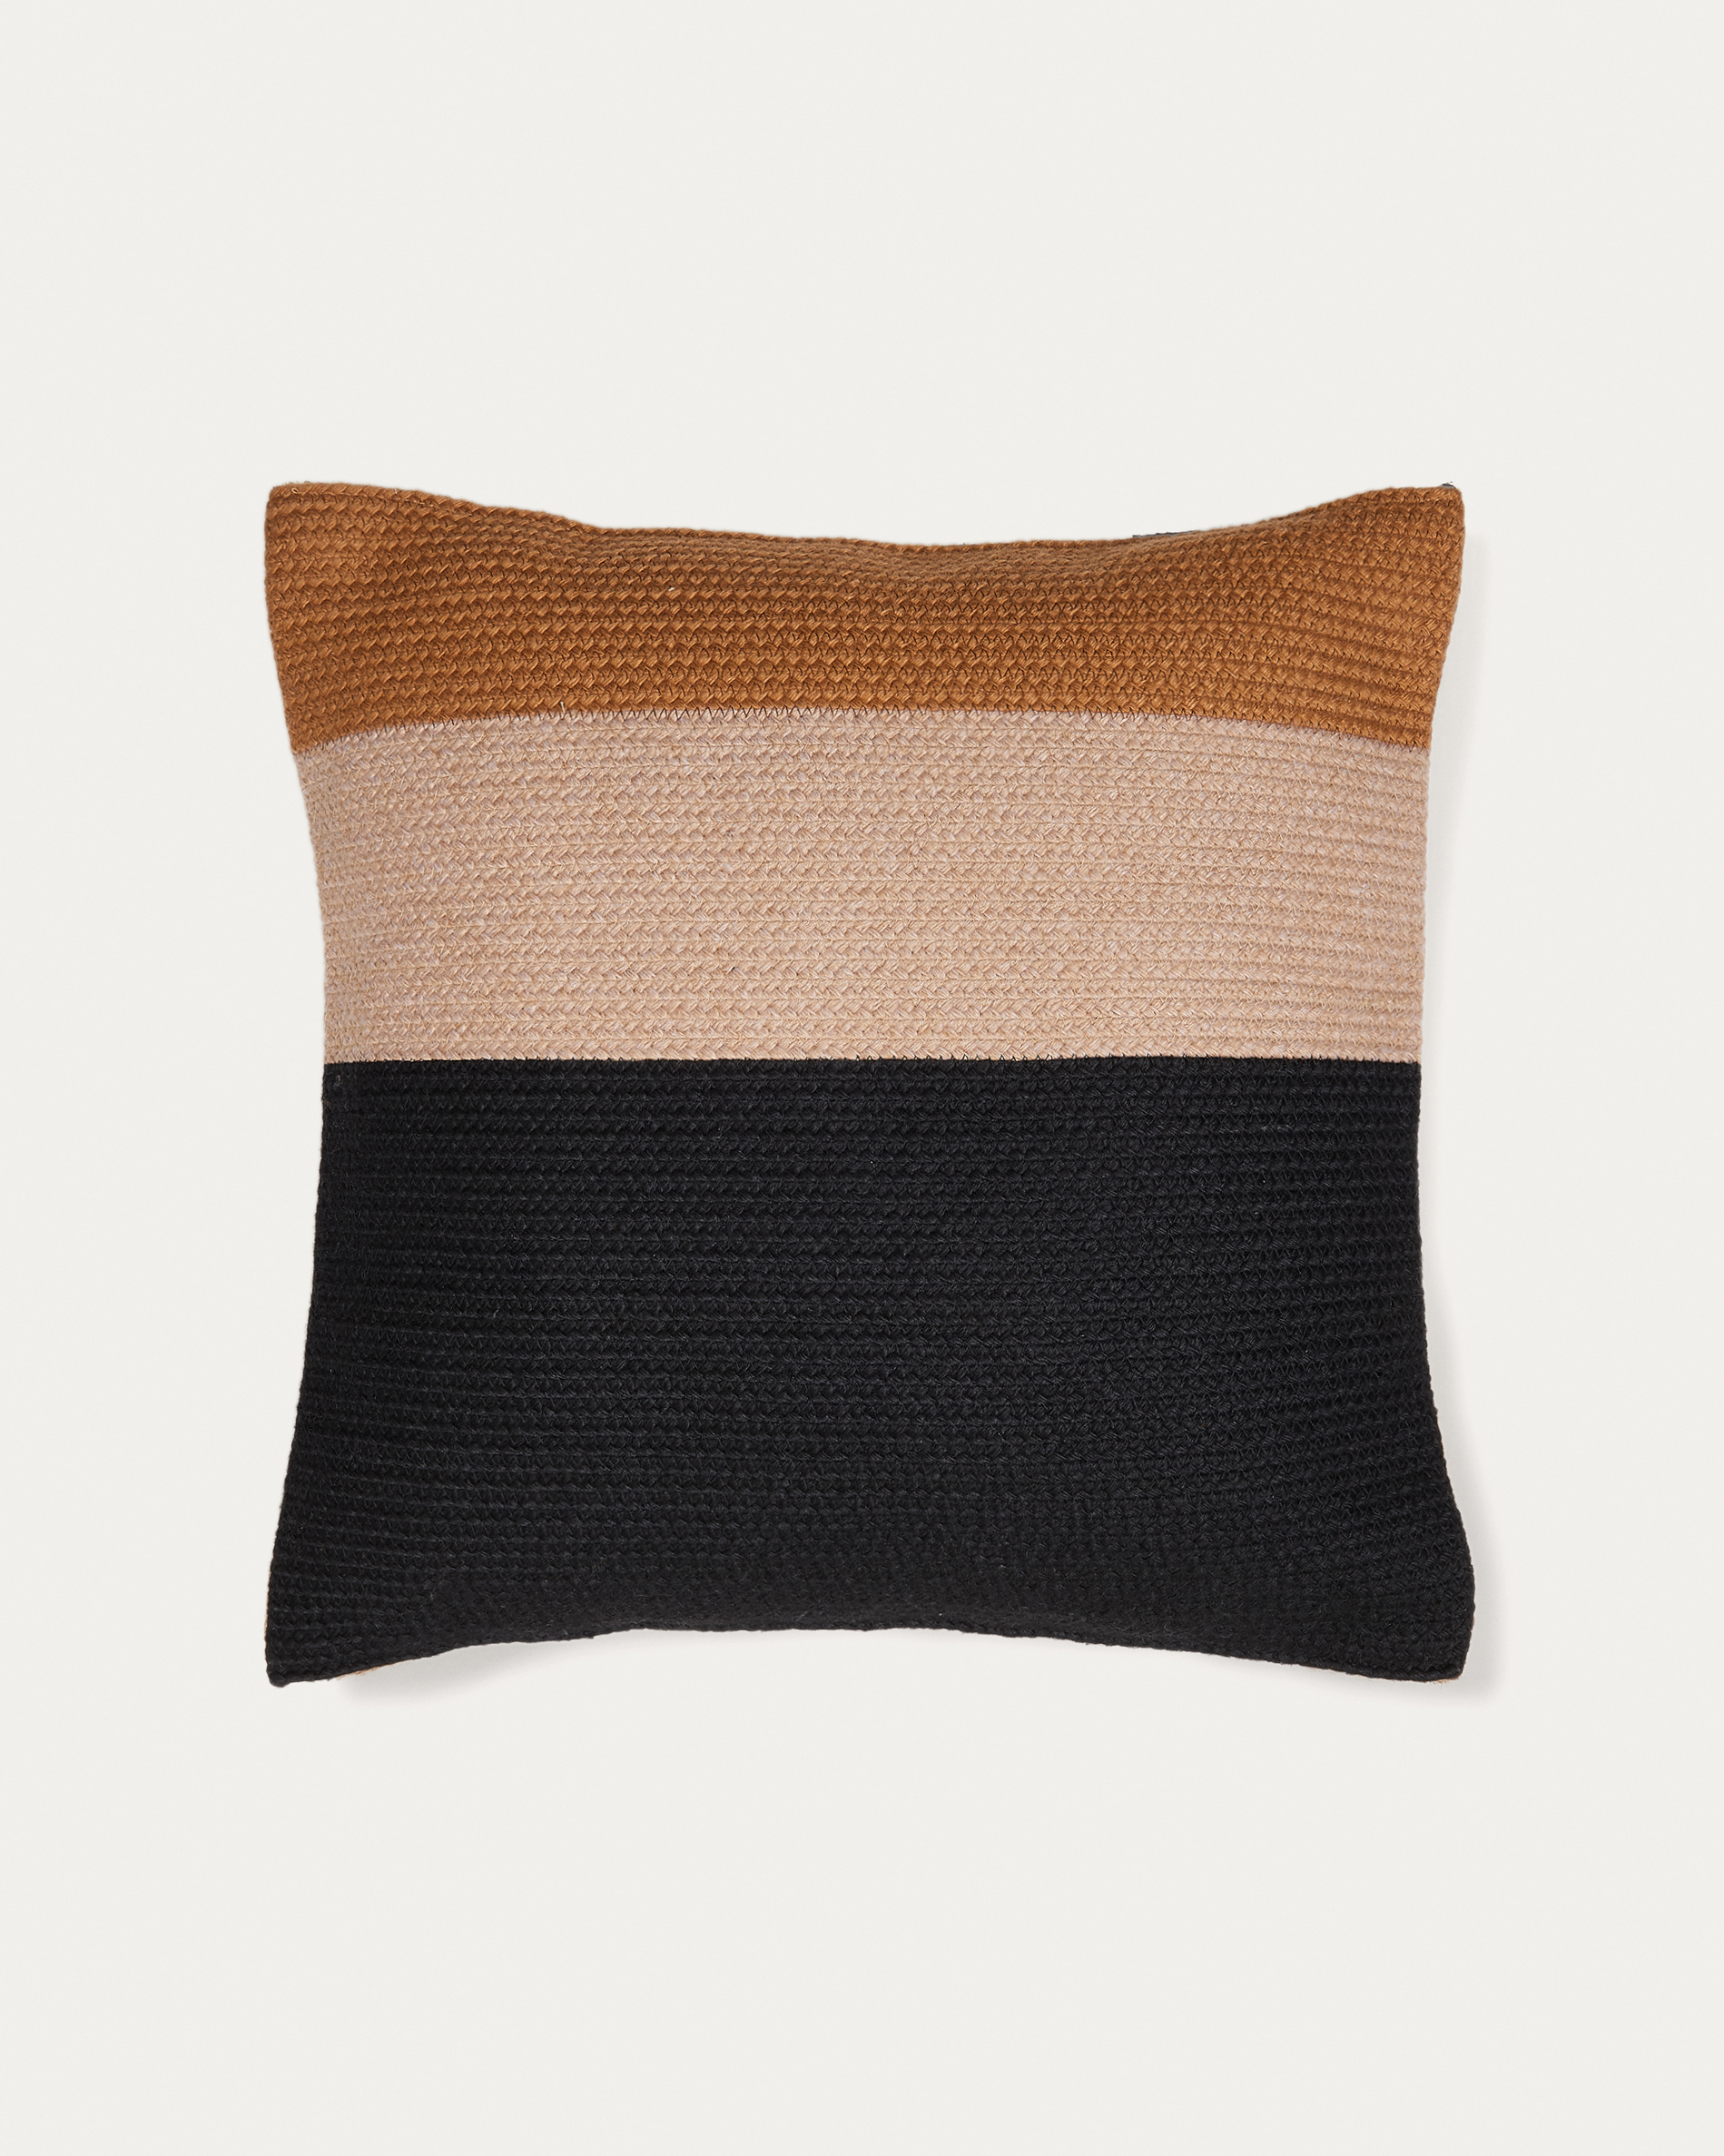 Saigua black and brown striped cushion cover 100% PET 45 x 45 cm